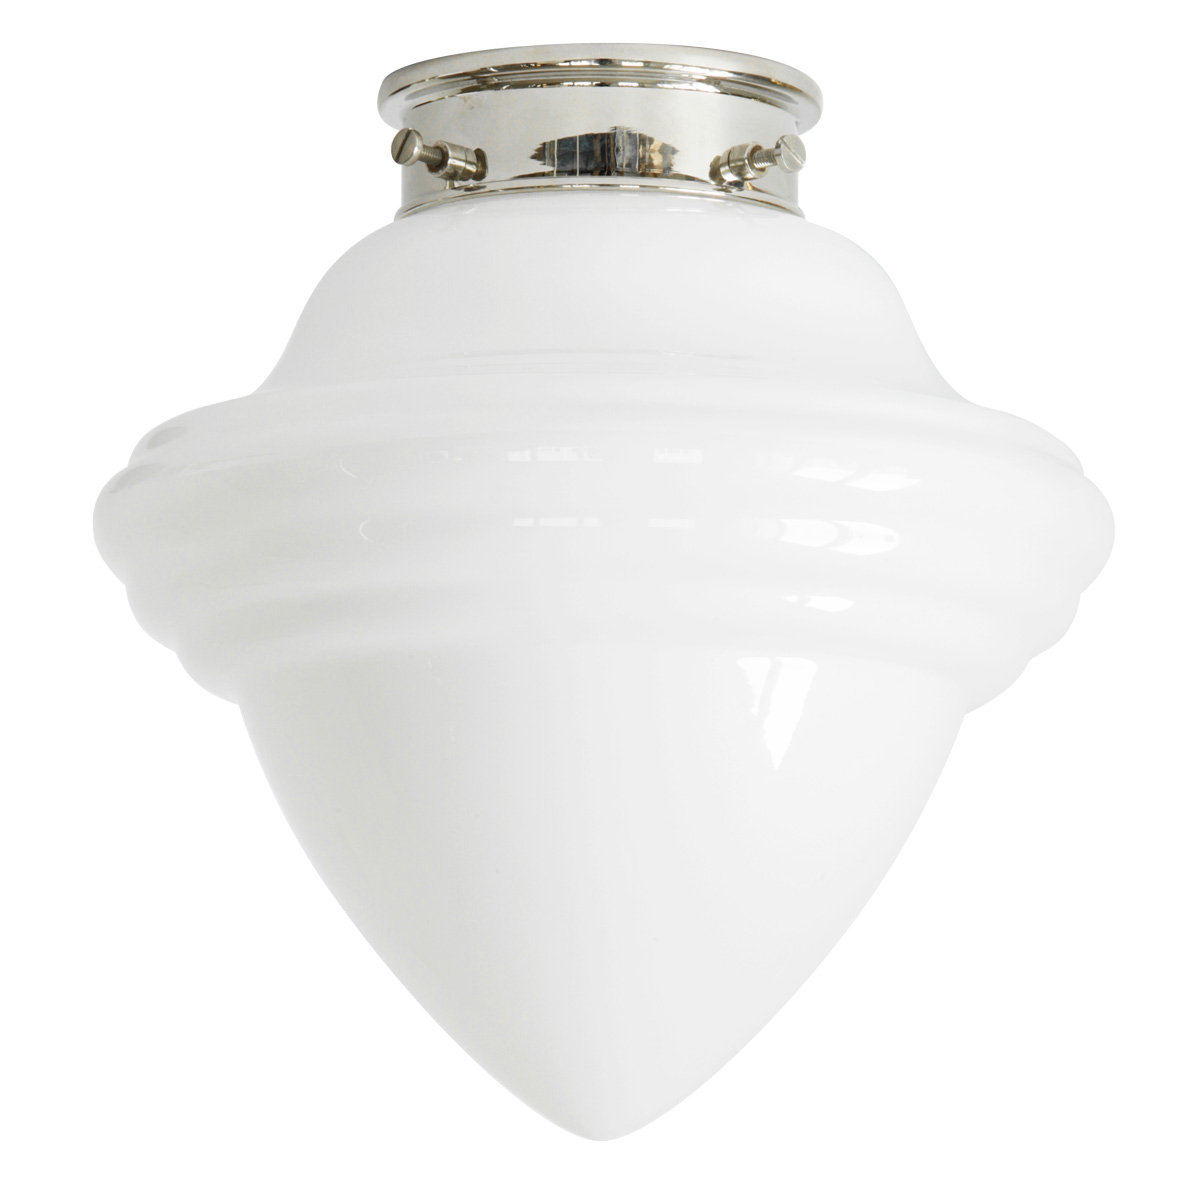 Kleine Deckenlampe mit spitzem Art déco-Opalglas Ø 16 cm: Deckenleuchte, abgebildet mit schlankem, glatten Deckenteil in Messing glanzvernickelt (momentan leider nicht lieferbar)